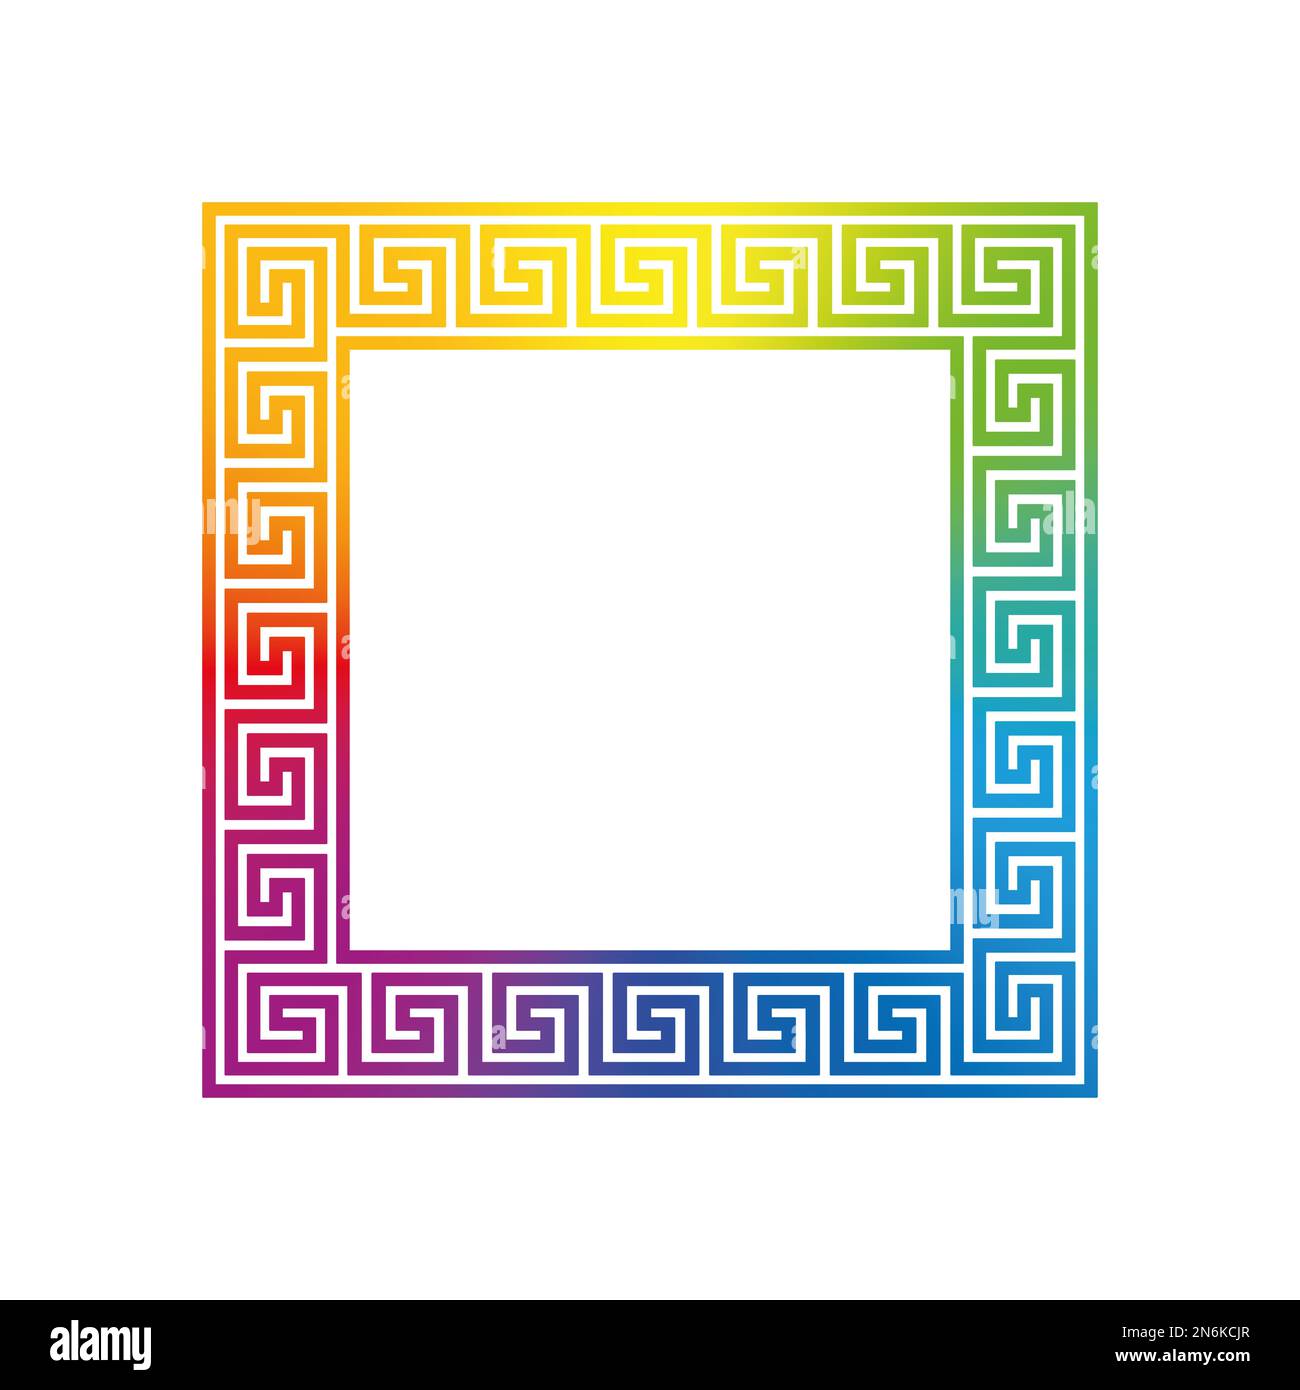 Quadratisches, schlankes Design, Rahmen mit nahtlosem Muster in Regenbogengradienten. Meandros, ein dekorativer Rahmen, aus durchgehenden Linien. Stockfoto